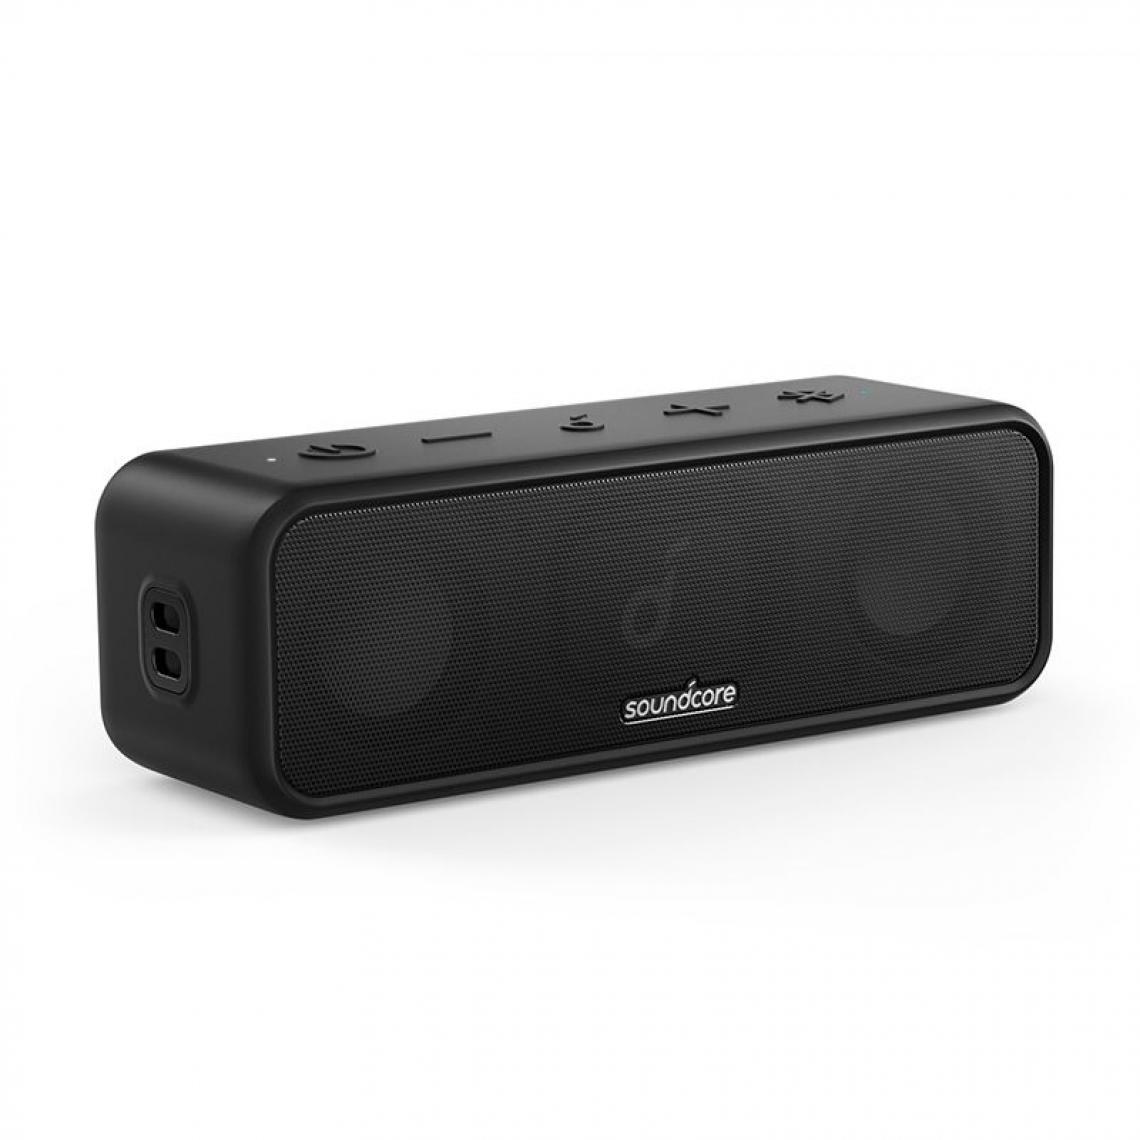 Generic - Enceinte Portable Anker  Soundcore3 , avec son stéréo Sans fil et Connecté avec Bluetooth, autonomie de 24H ,  IPX7 étanche, compatible avec Android, iPhone, et Ordinateur  Portable   16.5 * 5.4 * 4.5 cm - Noir  - Hauts-parleurs